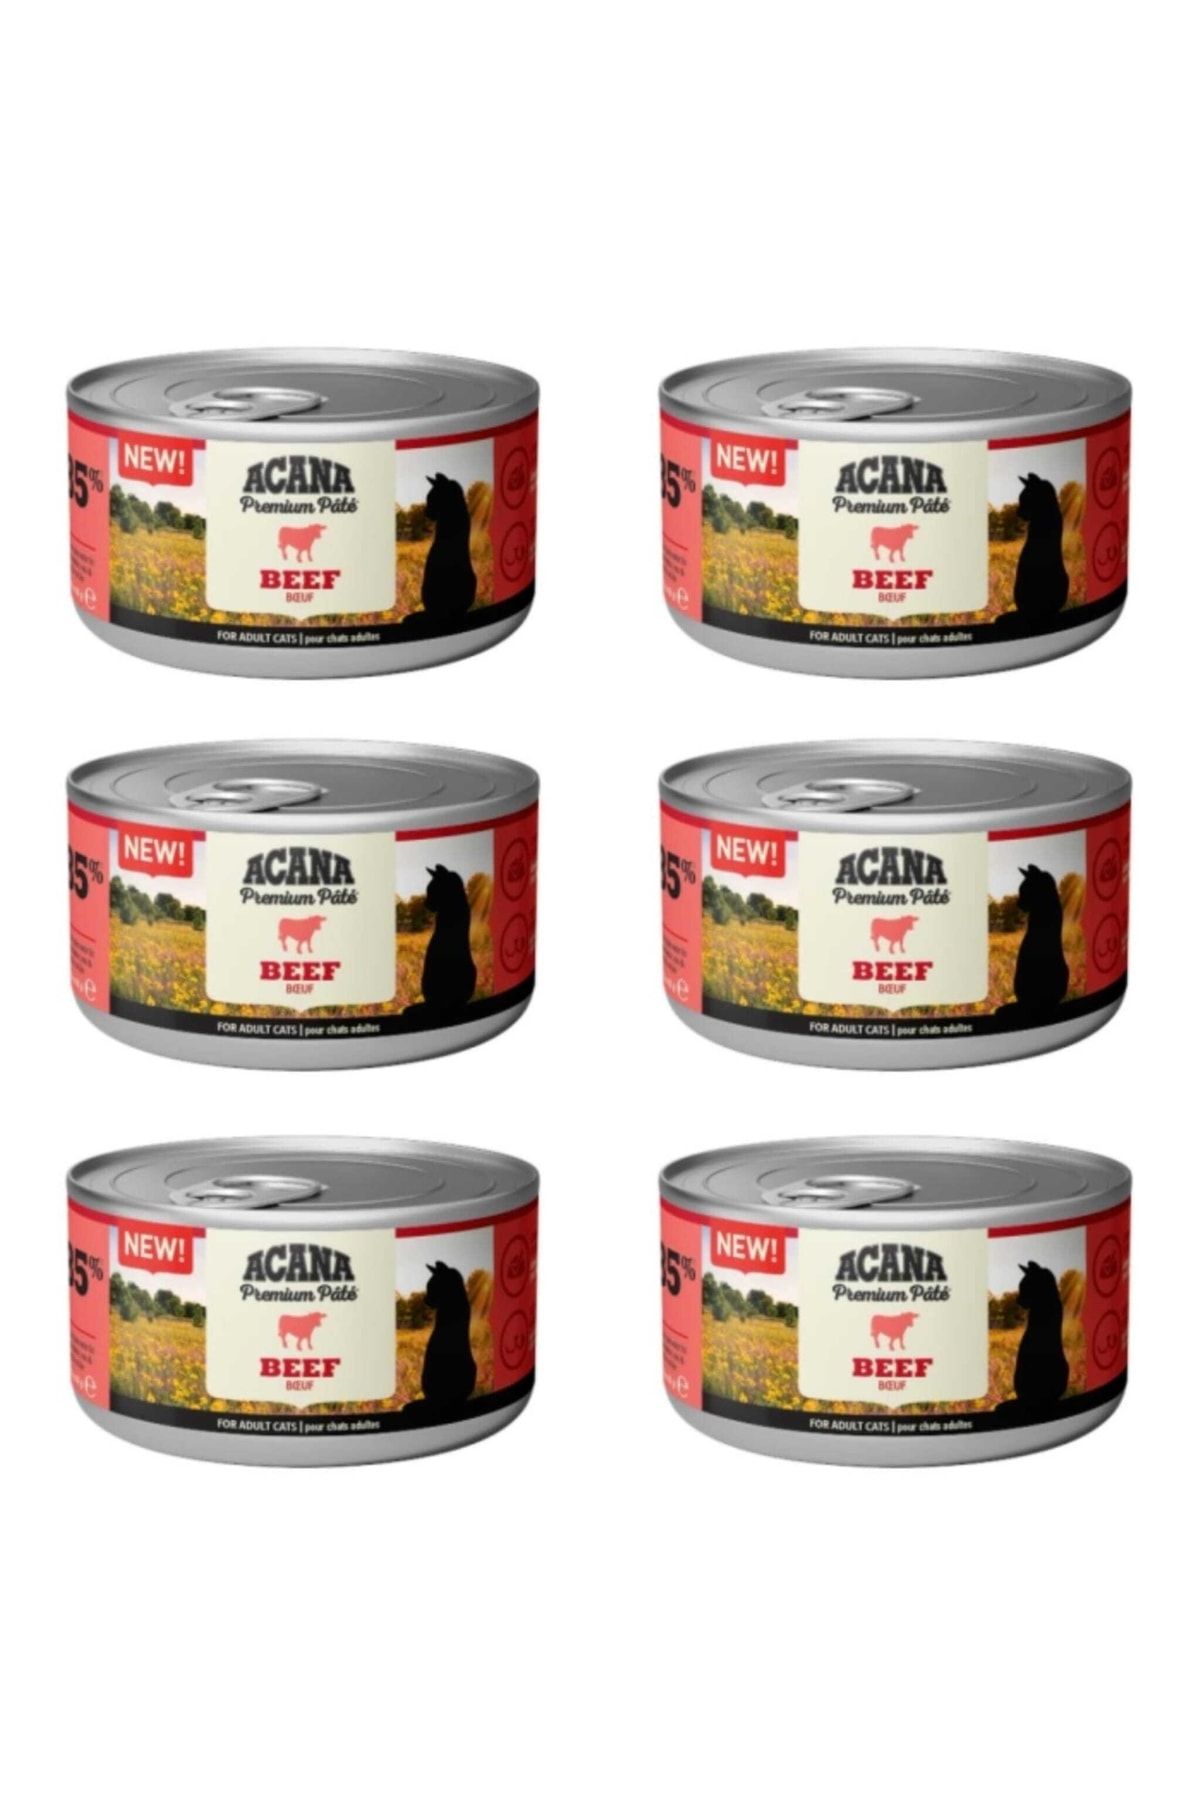 Acana Neo Pet Market Premium Pate (ezme) Sığır Etli Kedi Konservesi 85 Gr X 6 Adet